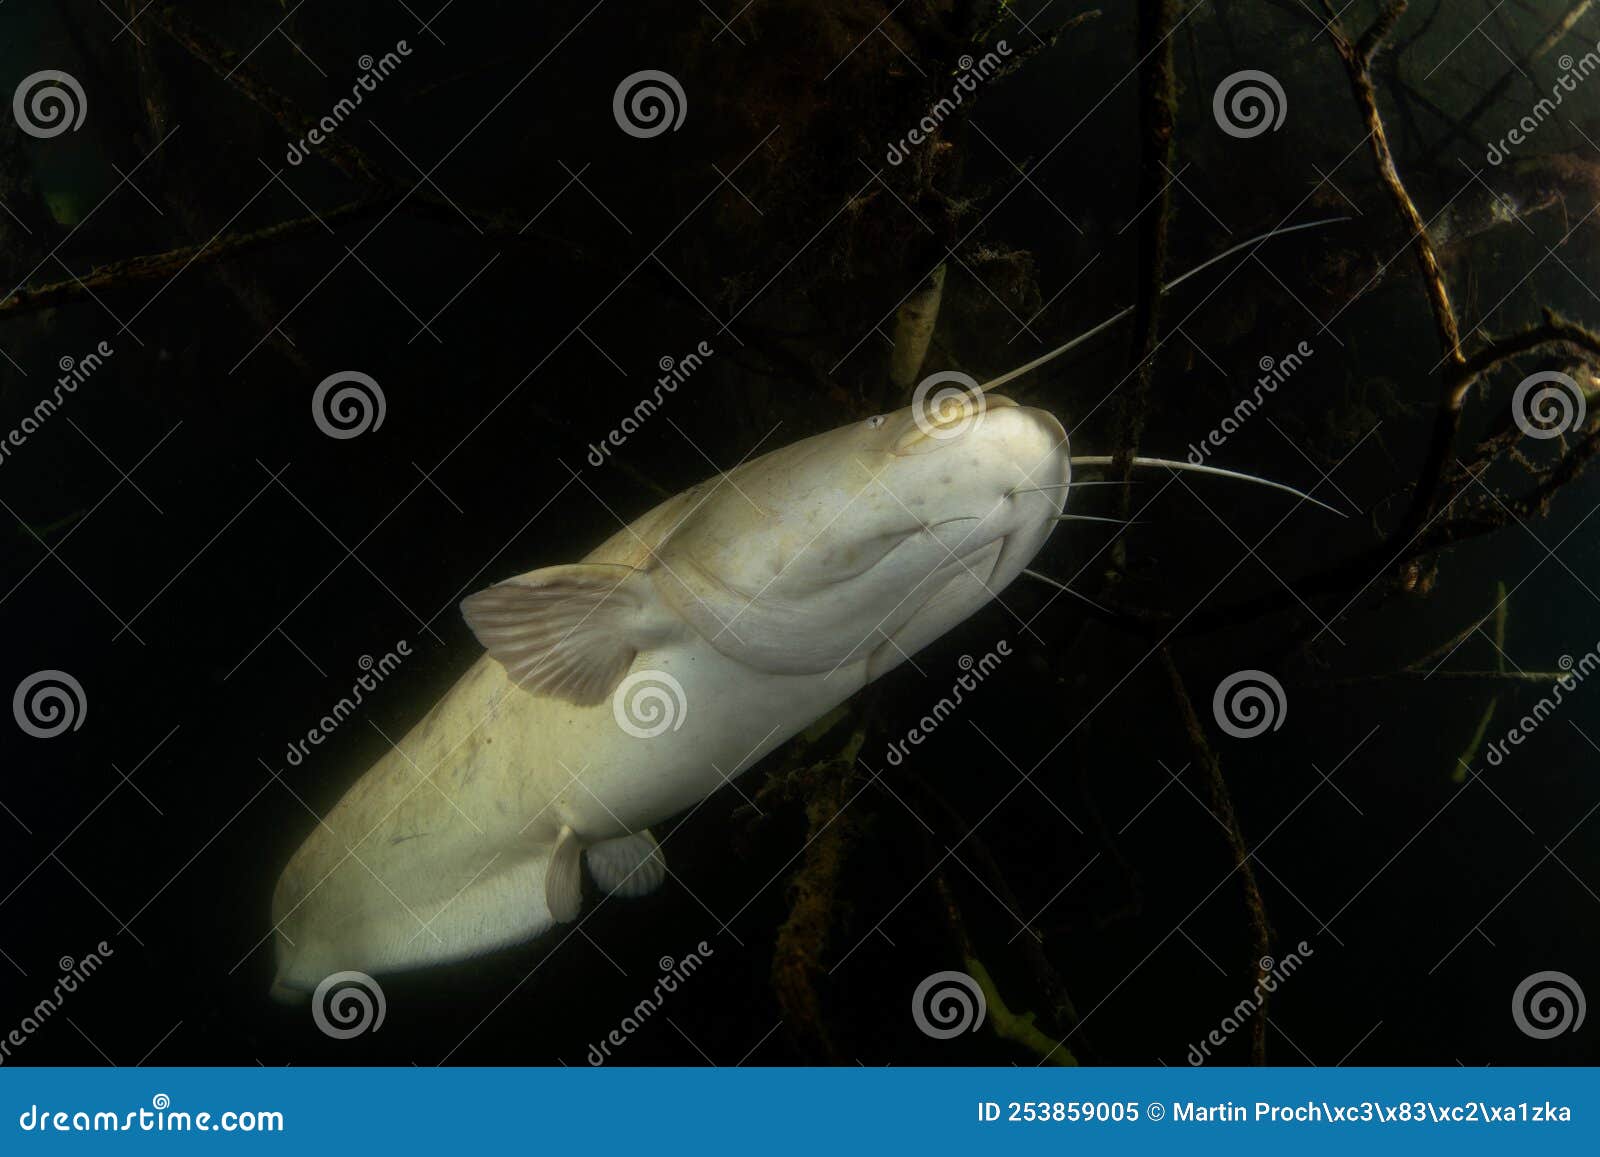 Wels Catfish, Silurus Glanis, Sheatfish Stock Image - Image of